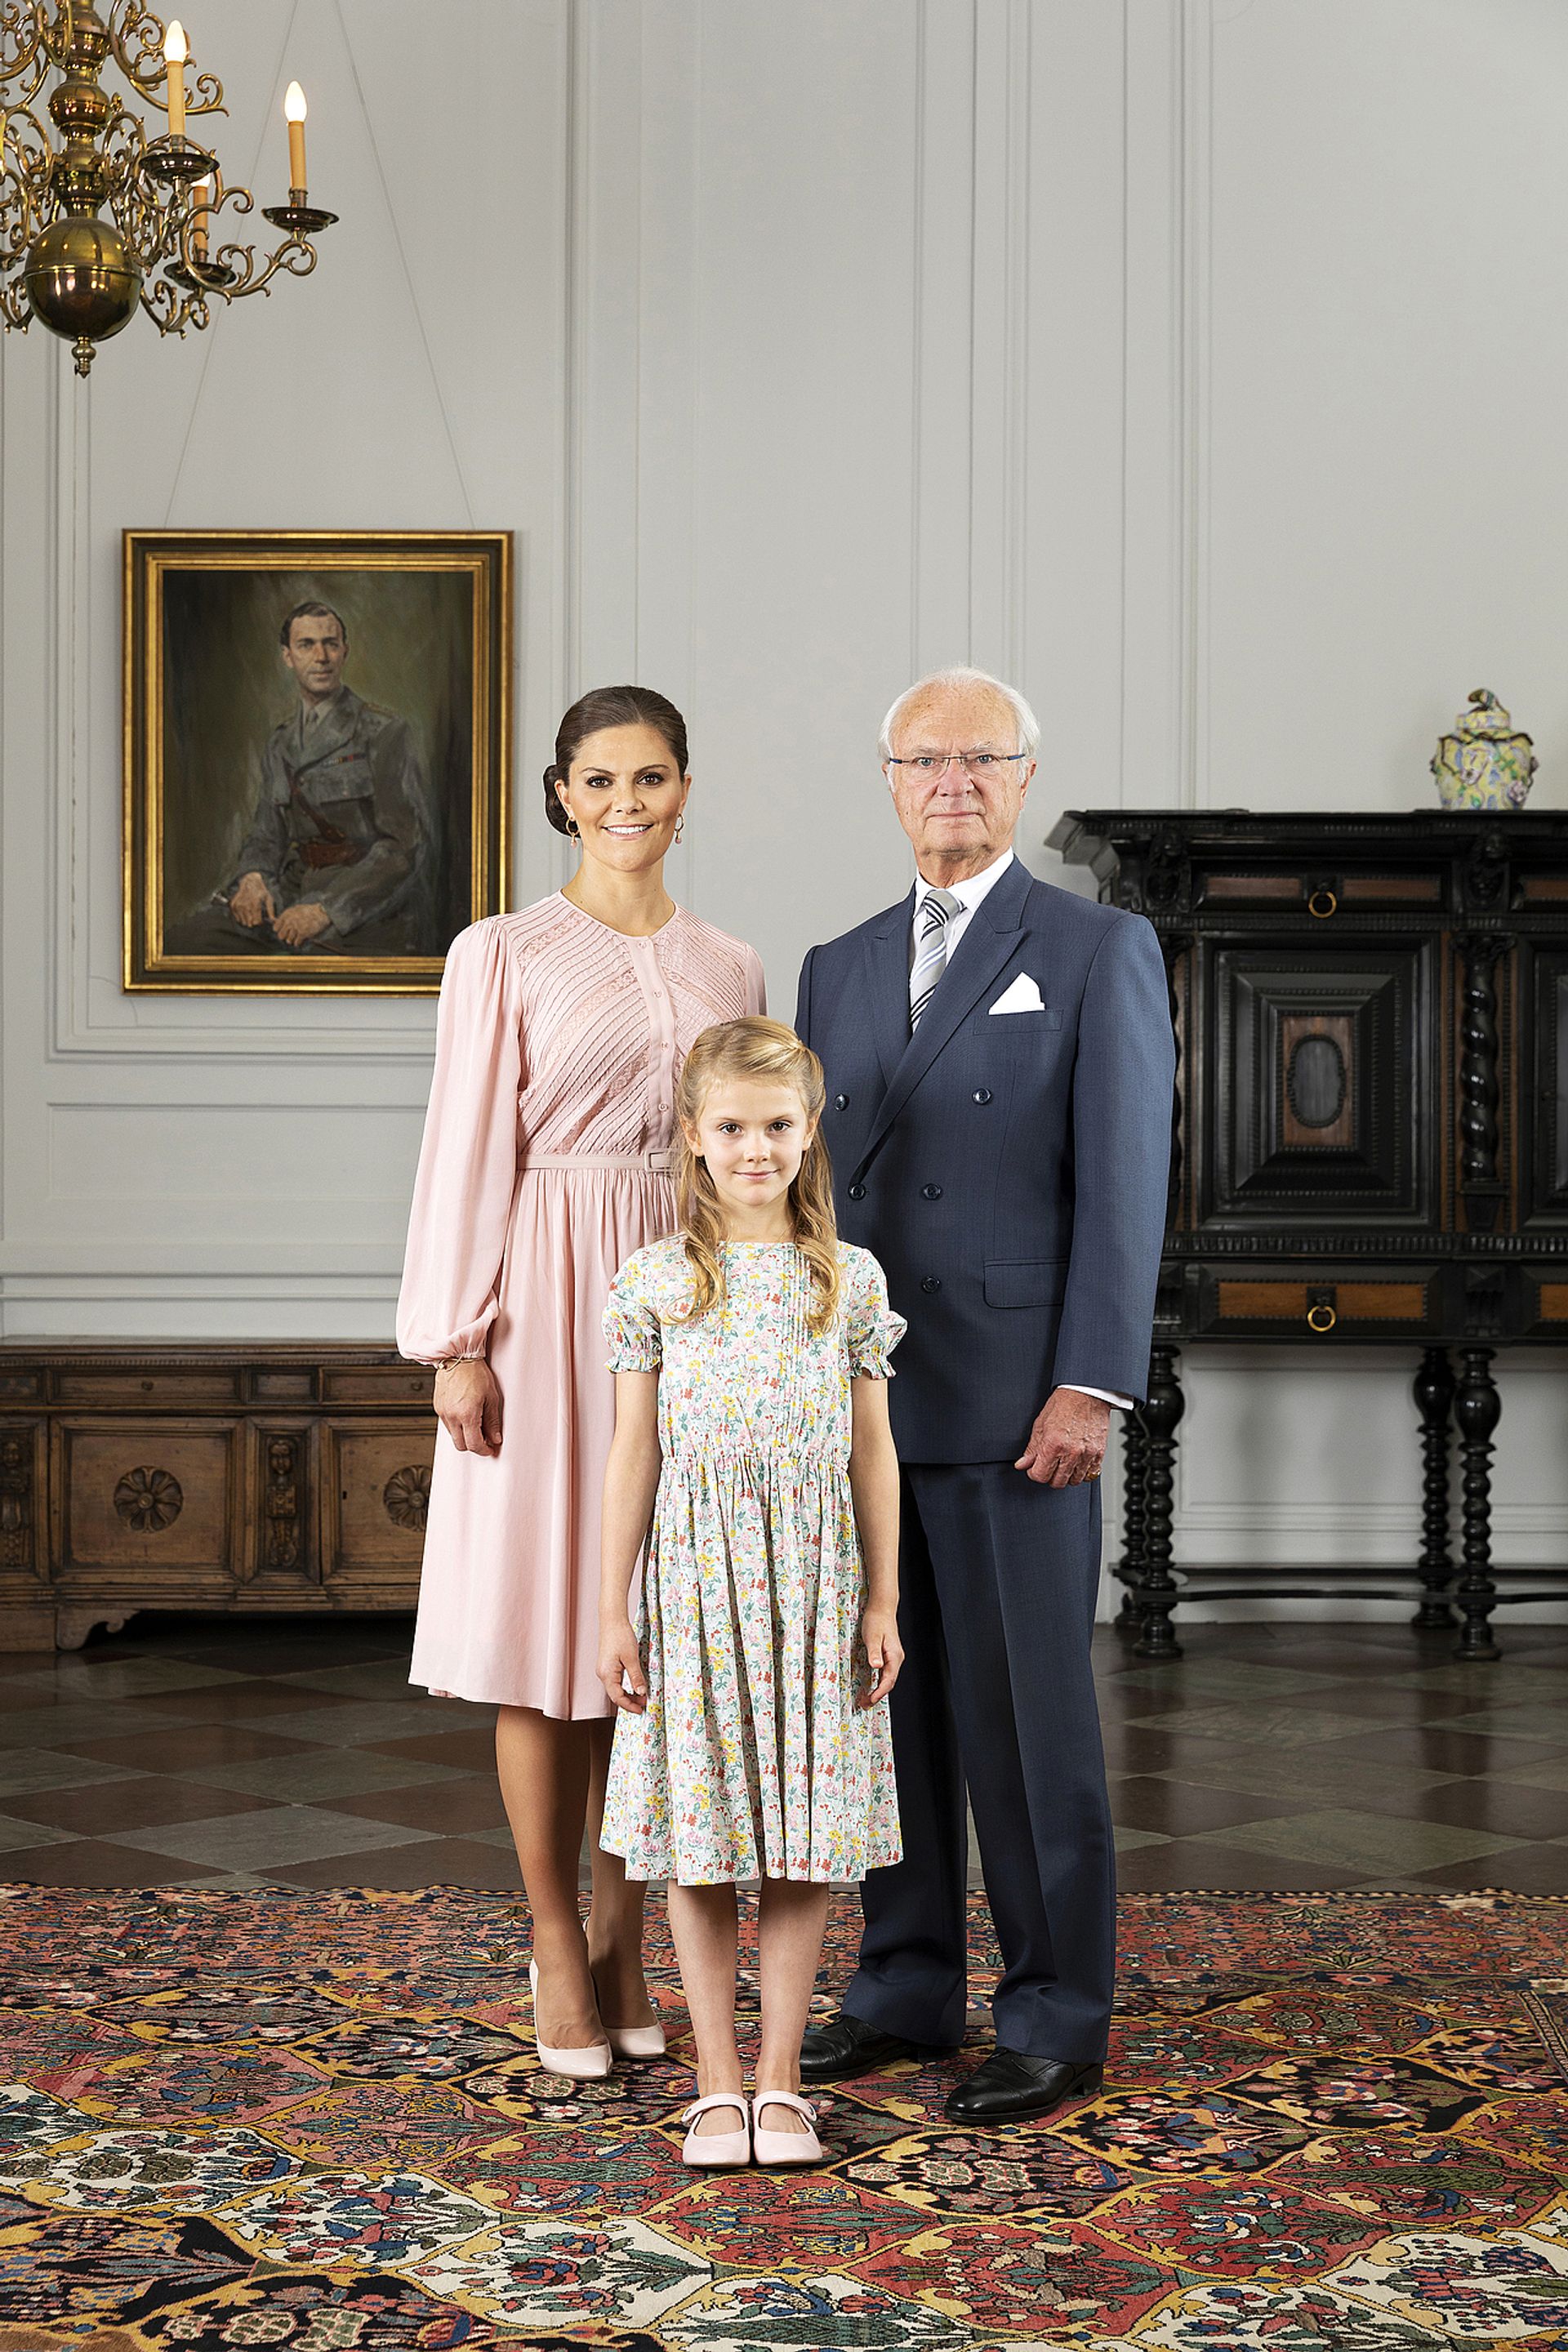 De meest recente drie-generatie foto van de Zweedse royals is van september 2019.